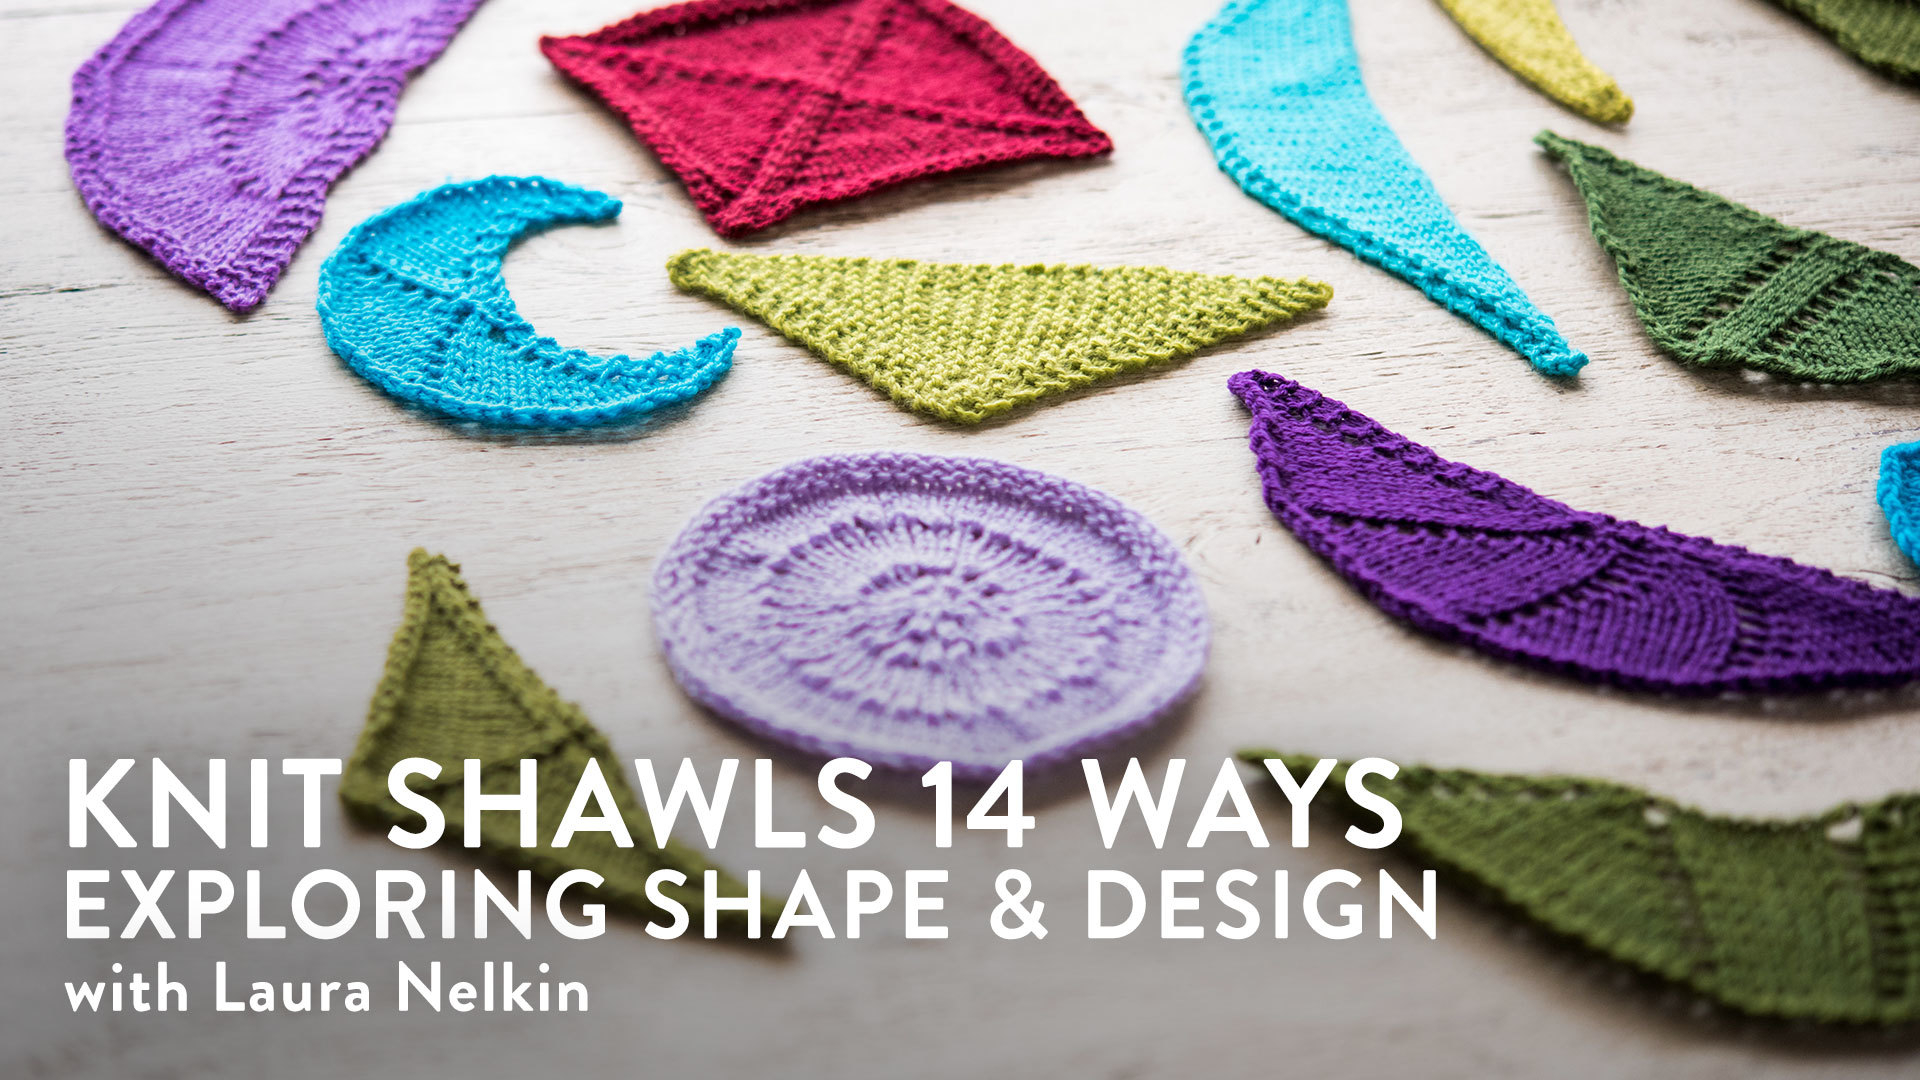 Knit Shawls 14 Ways: Exploring Shape & Design